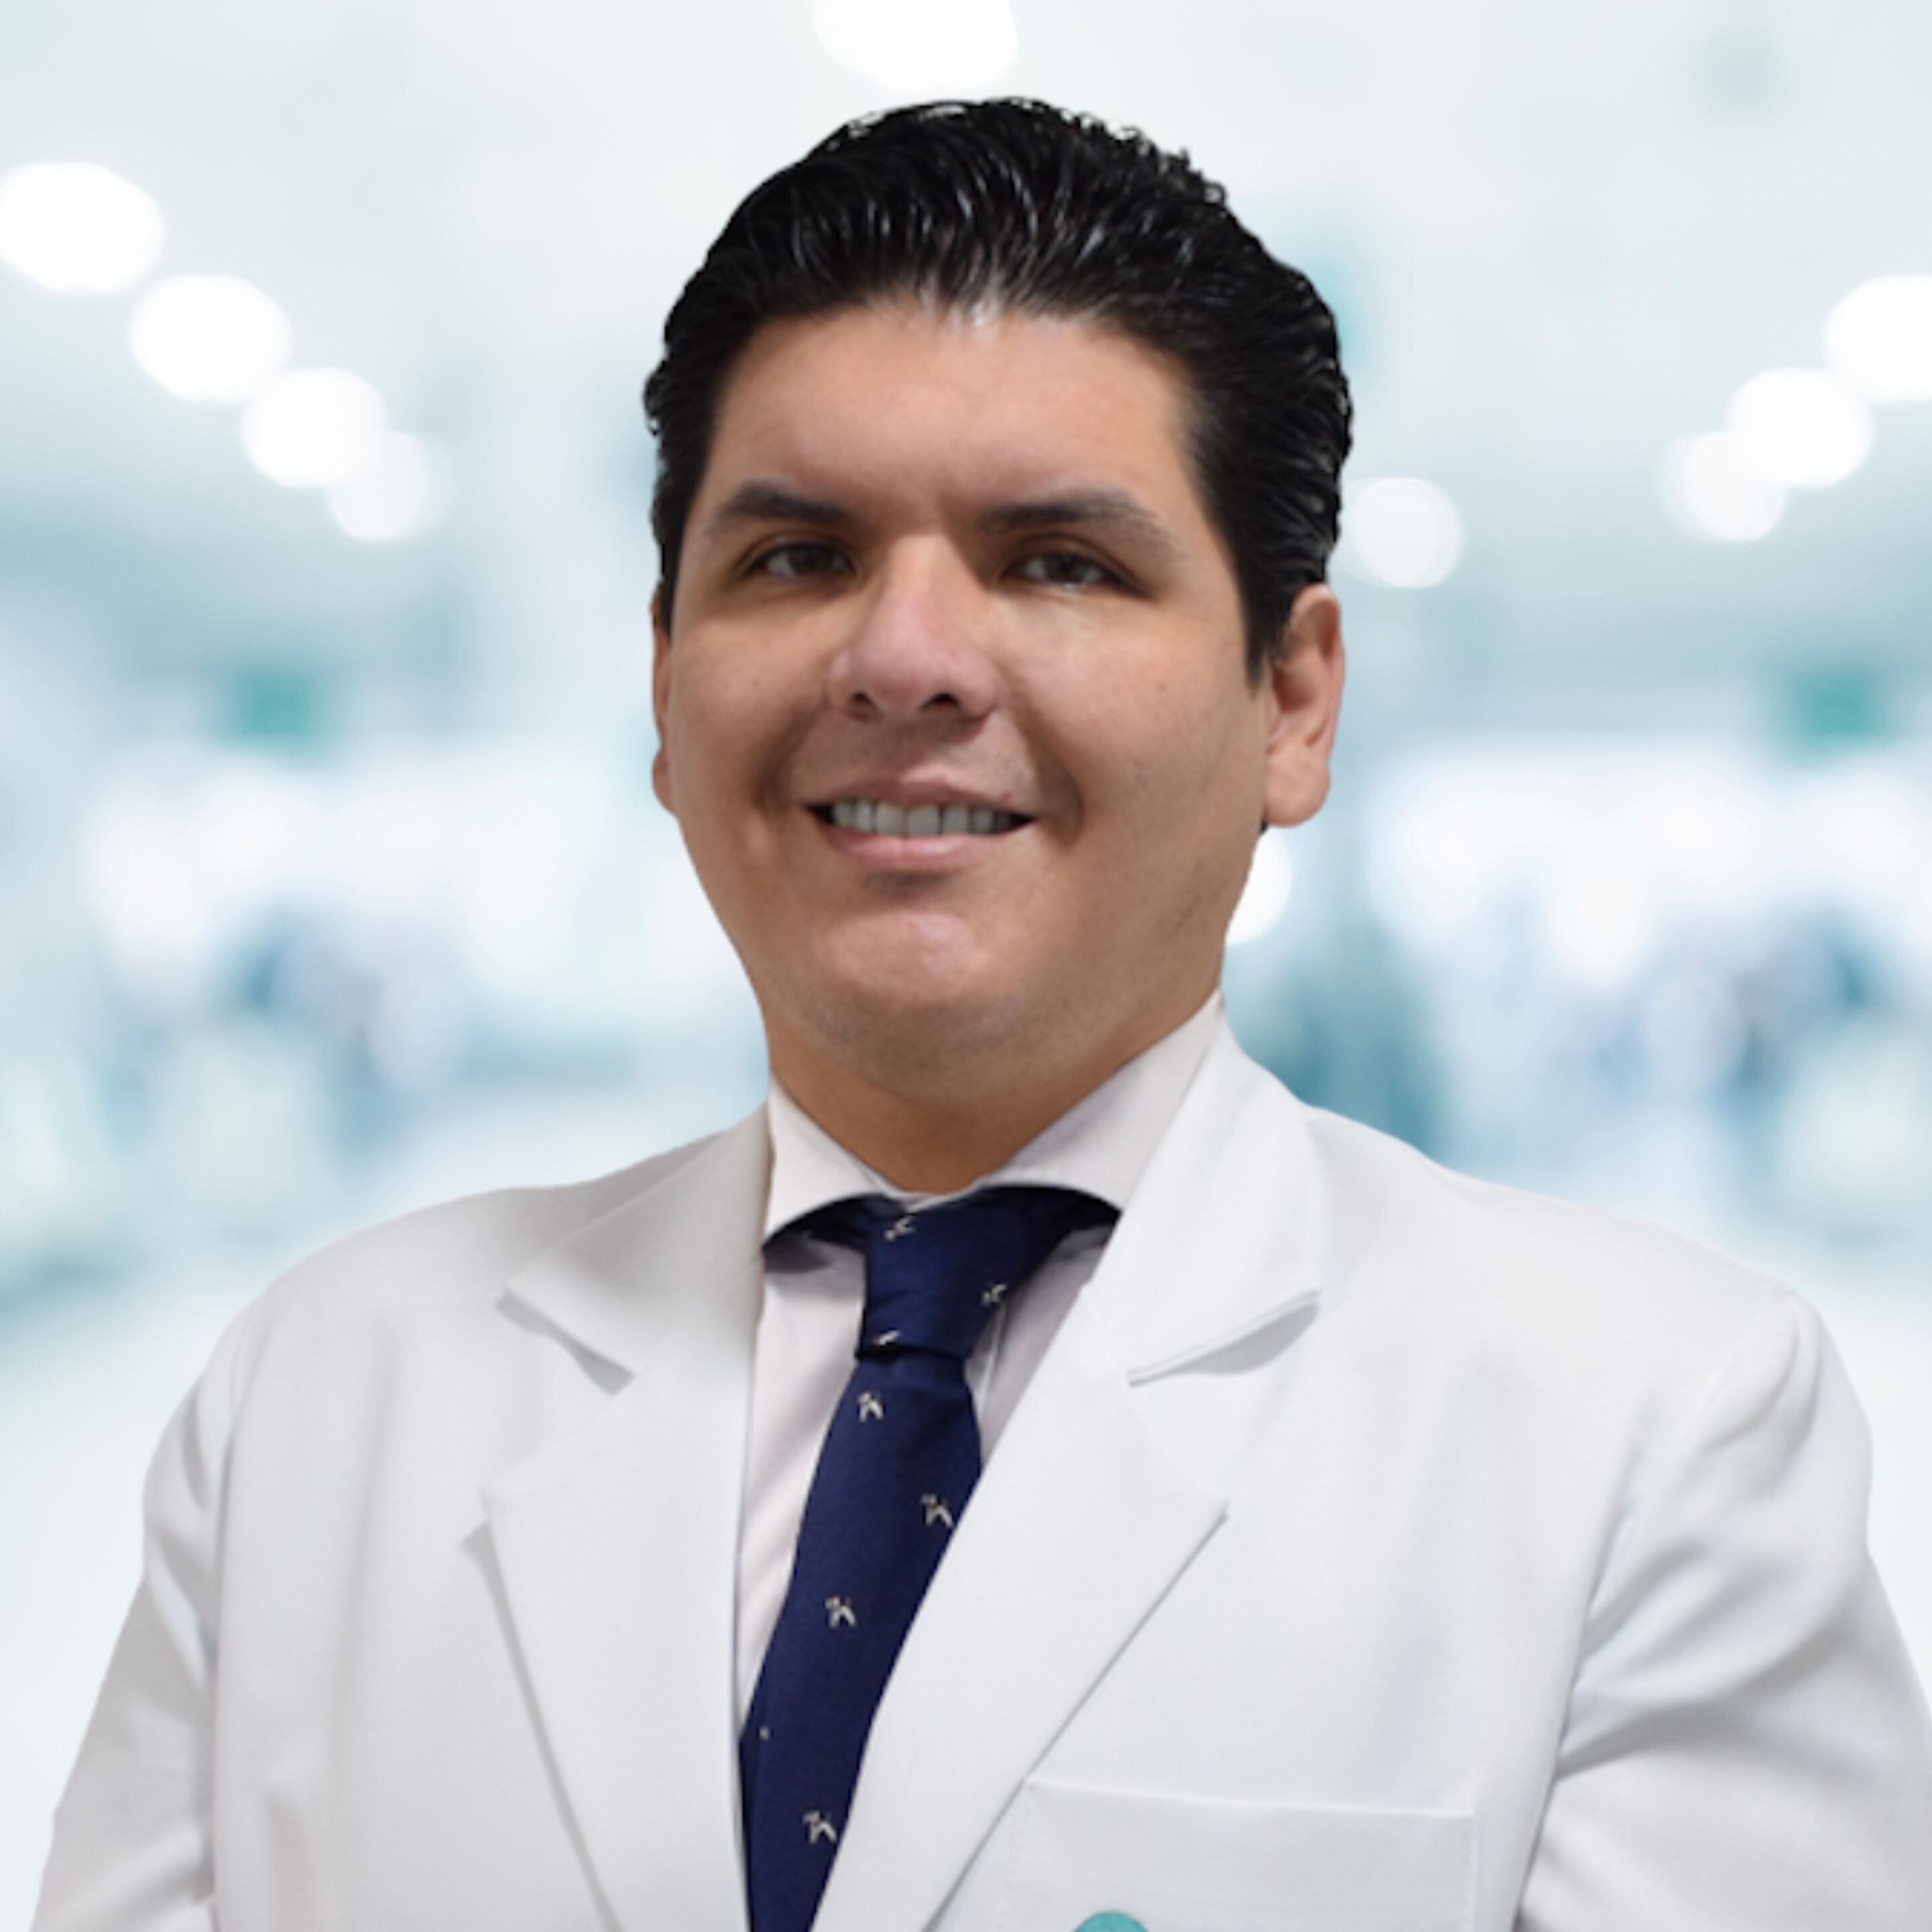 El doctor Manuel Moquillaza es coordinador del Servicio de Neurología de la clínica Ricardo Palma. (Foto: Difusión)